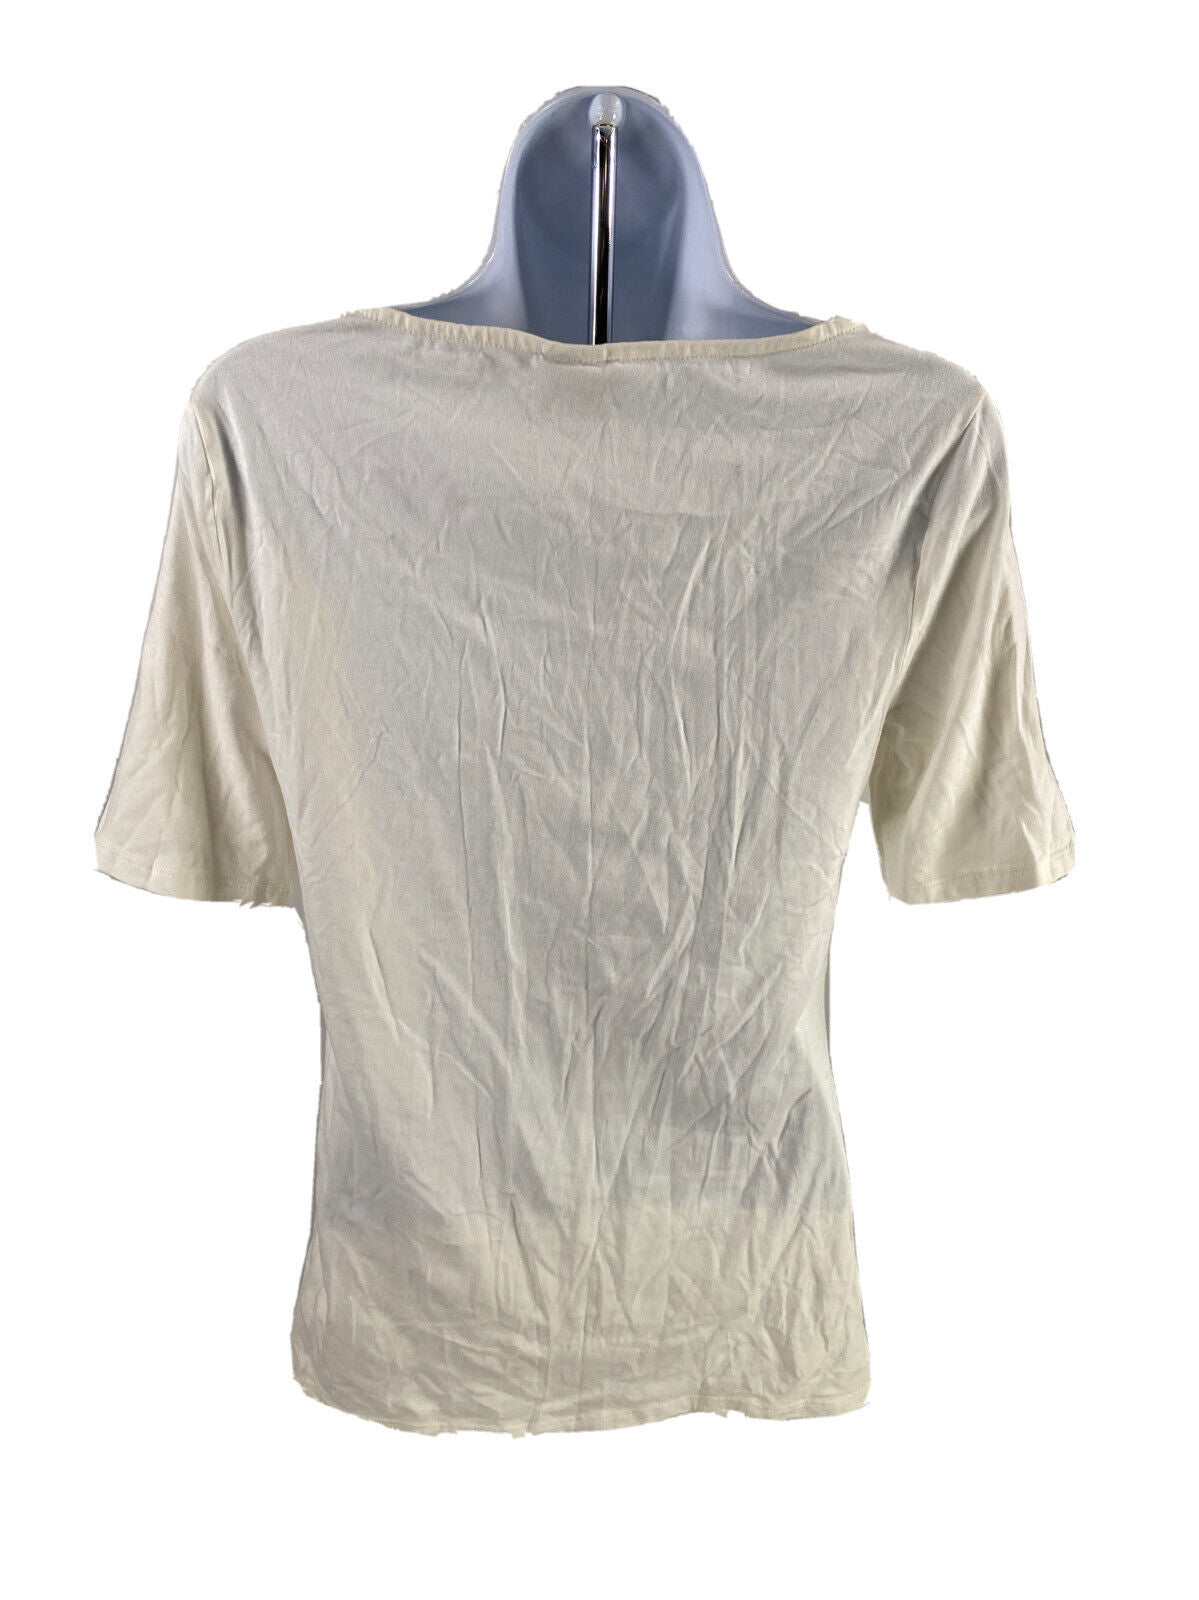 NEW Elle Women's White Criss Cross Front Short Sleeve T-Shirt - L